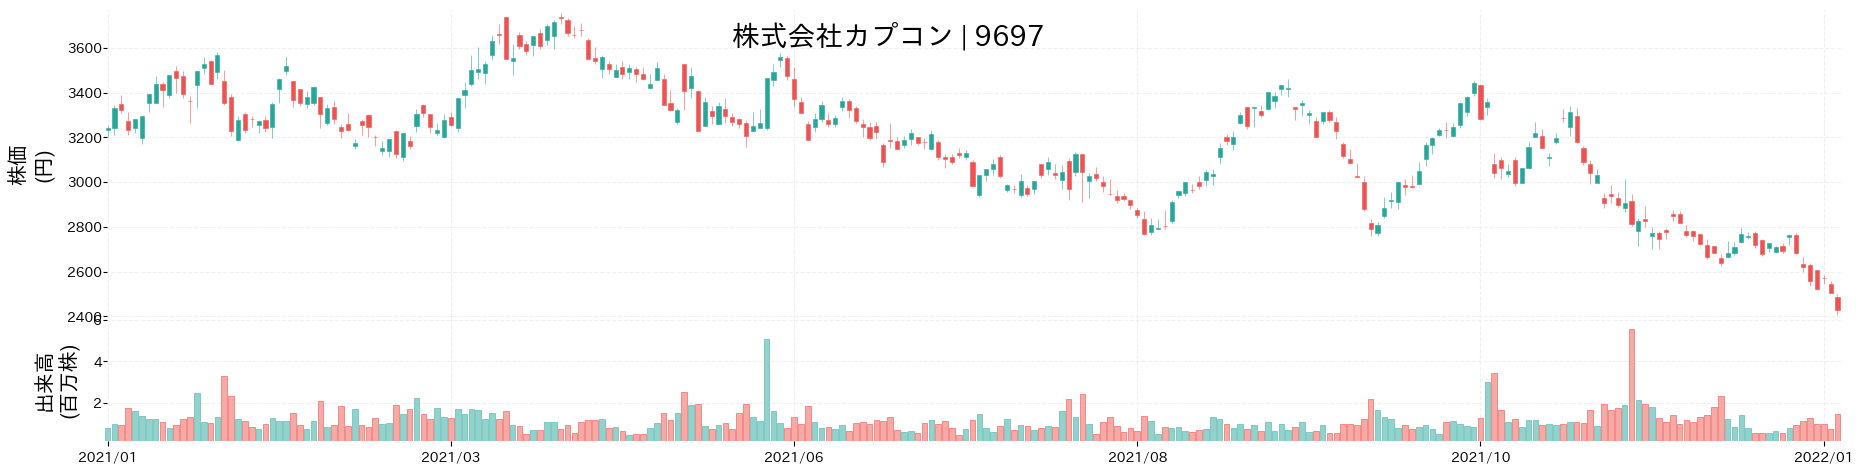 カプコンの株価推移(2021)